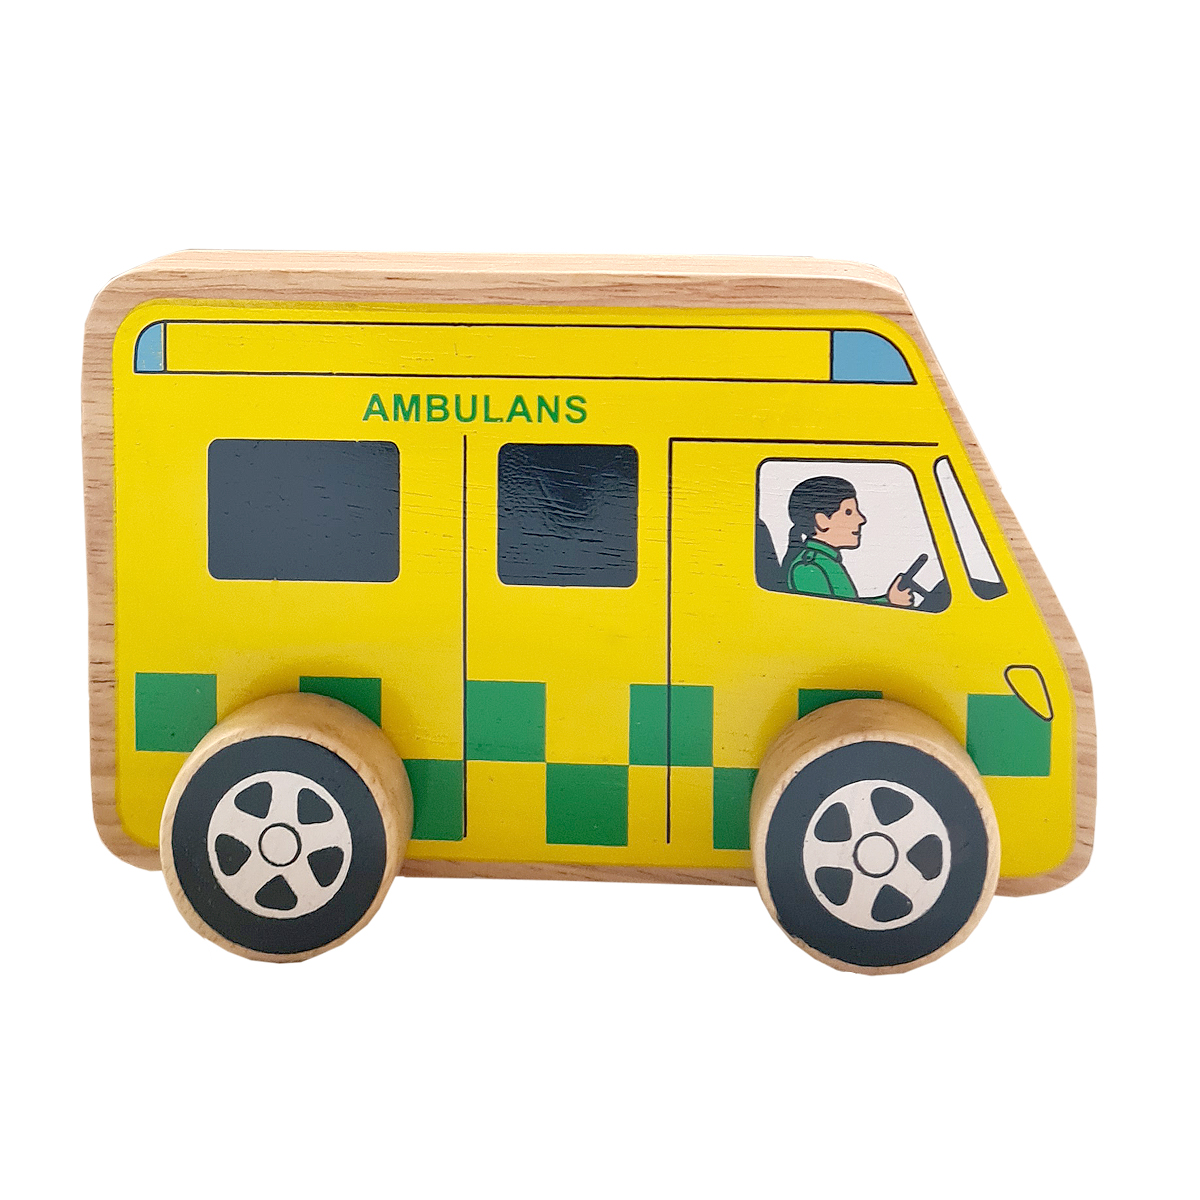 Ambulans av gummiträ handgjord FairTrade Lanka Kade